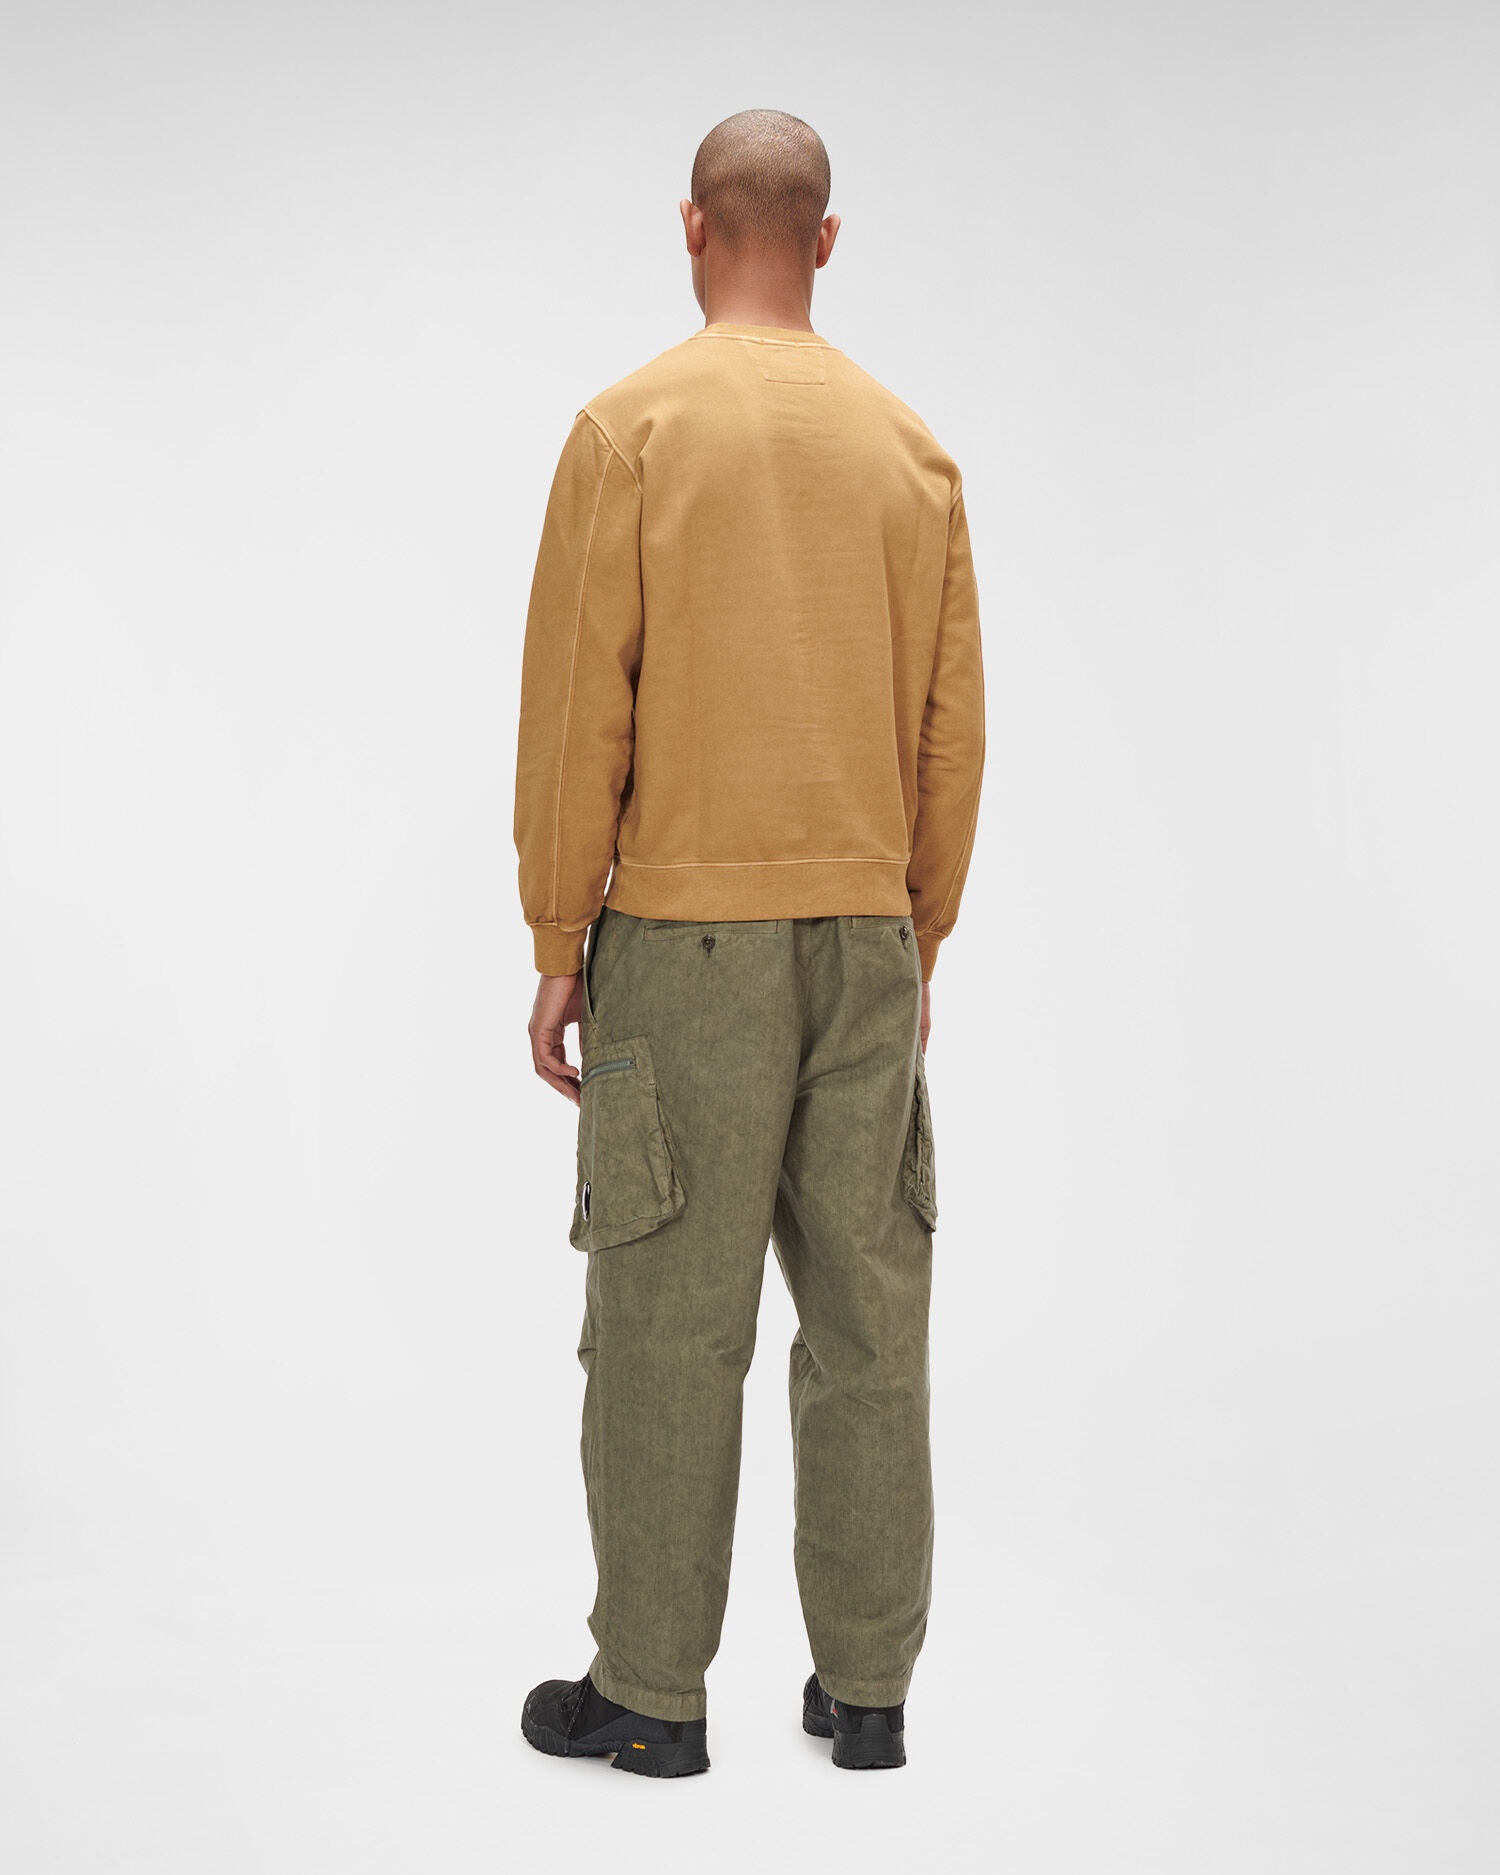 Brushed & Emerized Diagonal Fleece Sweatshirt - 4